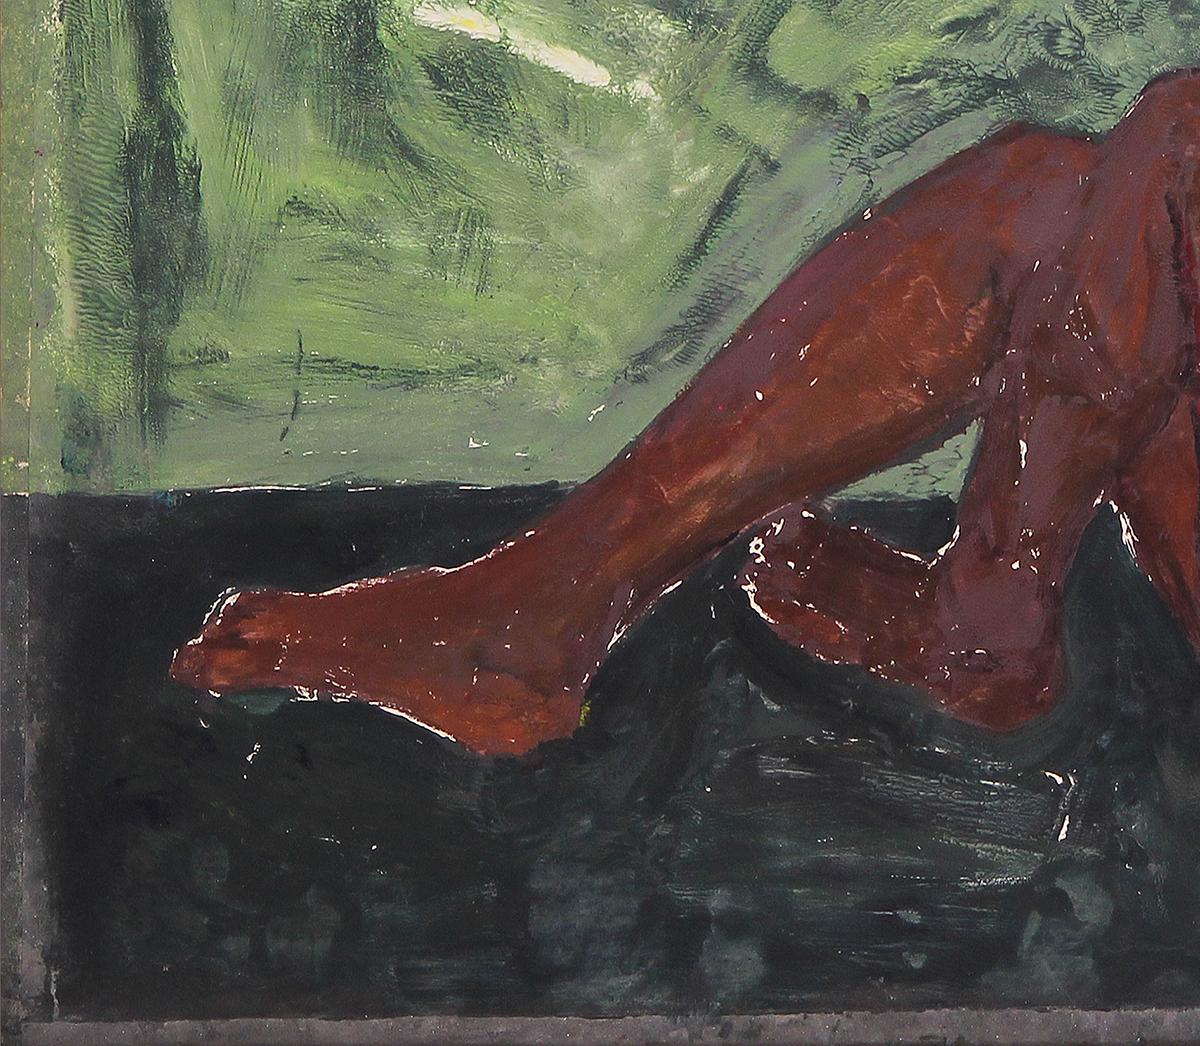 Grün- und rosafarbener abstrakter zeitgenössischer figurativer Monotypie-Druck der Künstlerin Saralene Tapley aus Houston, TX. Diese Monotypie zeigt einen liegenden schwarzen weiblichen Akt mit rosa Perücke vor einem grünen Hintergrund. Auf der